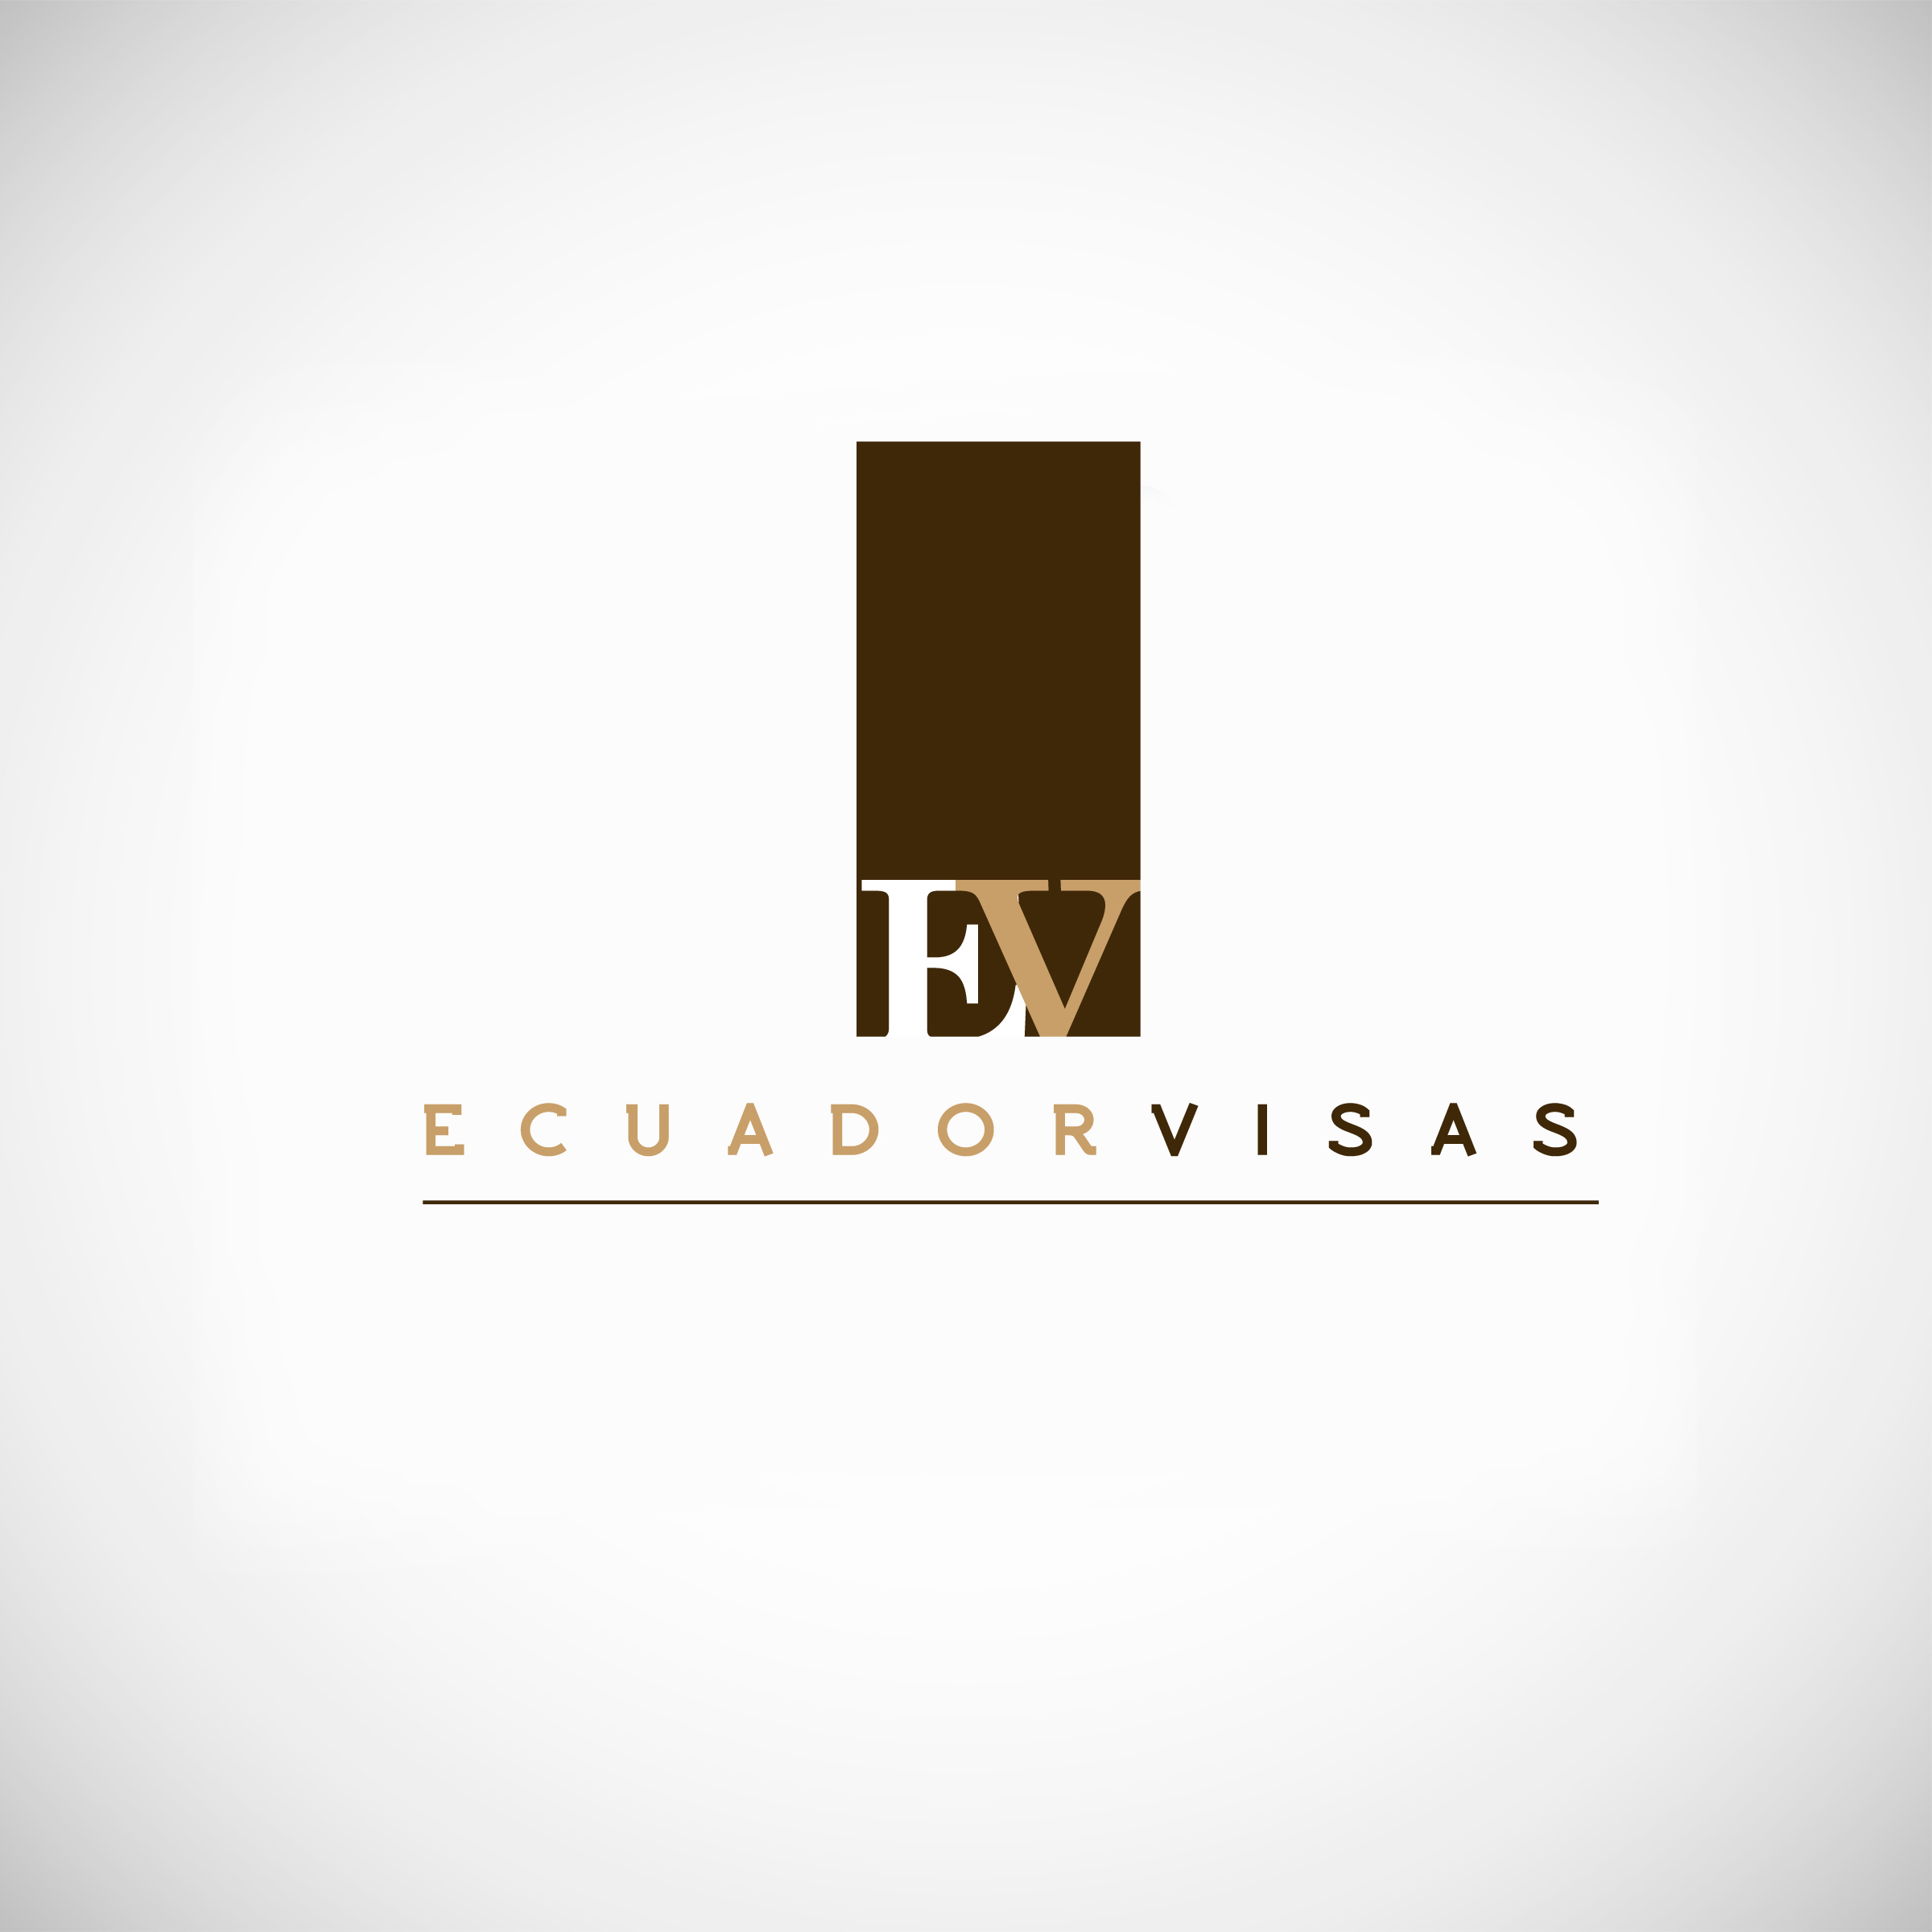 Company Logo For "Ecuador Visas" - Law Off'